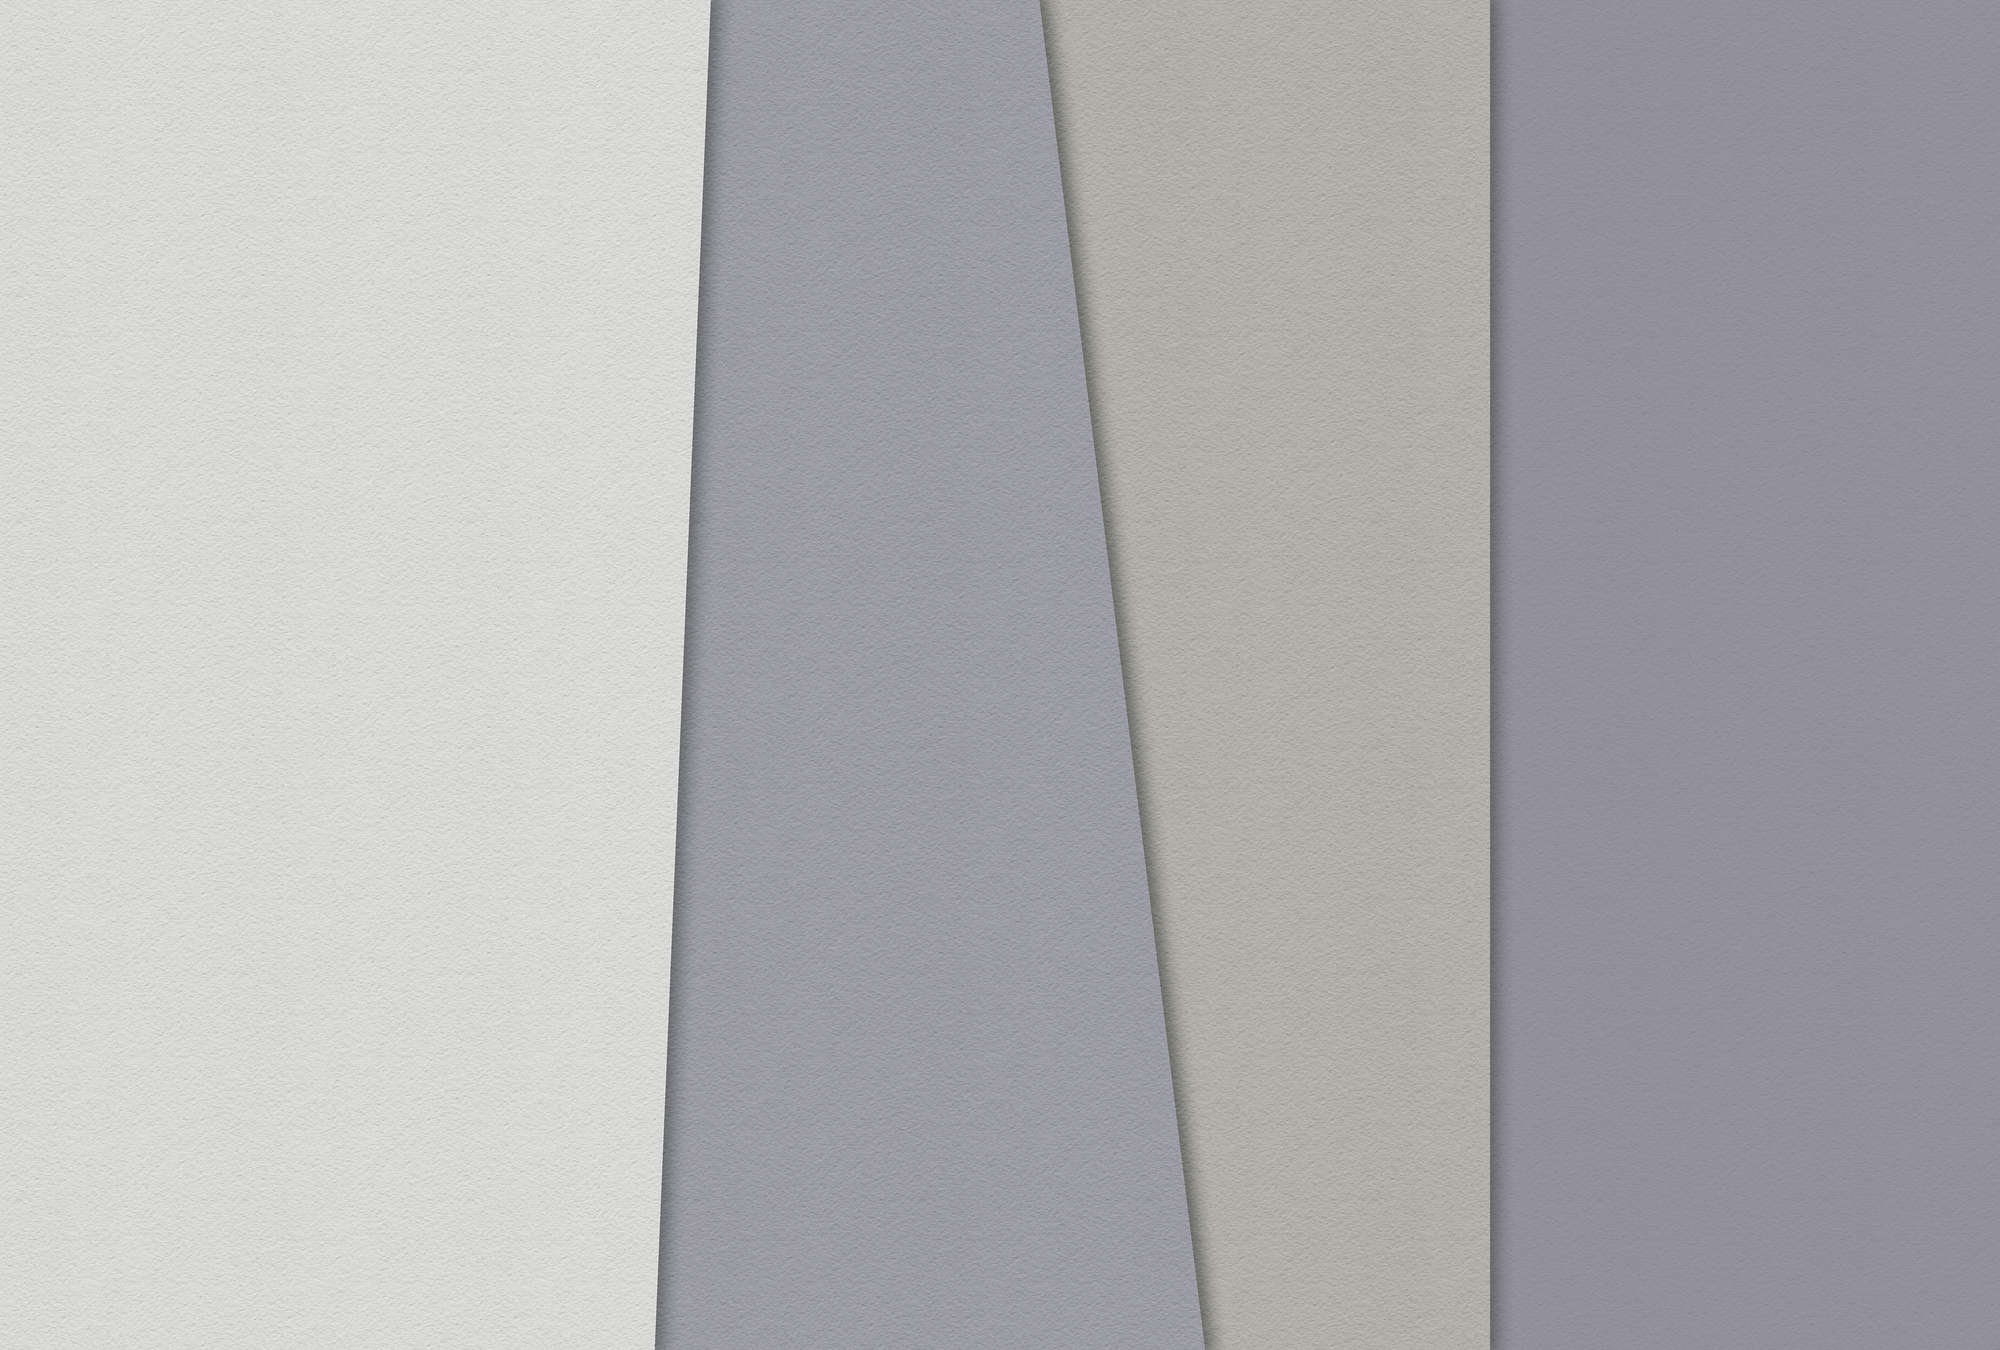             Layered paper 2 - Papier peint graphique, texture de papier à la cuve design minimaliste - crème, vert | Intissé lisse mat
        